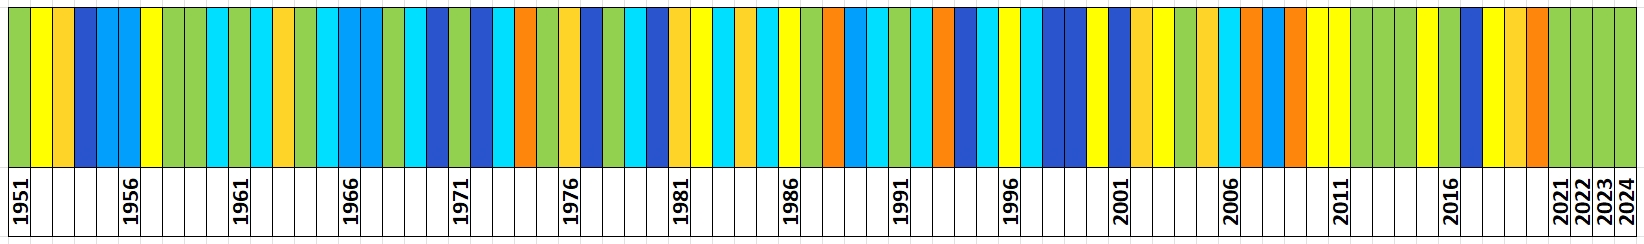 Klasyfikacja warunków pluwialnych w Polsce w kwietniu, w okresie 1951-2024, na podstawie norm okresu normalnego 1991-2020.